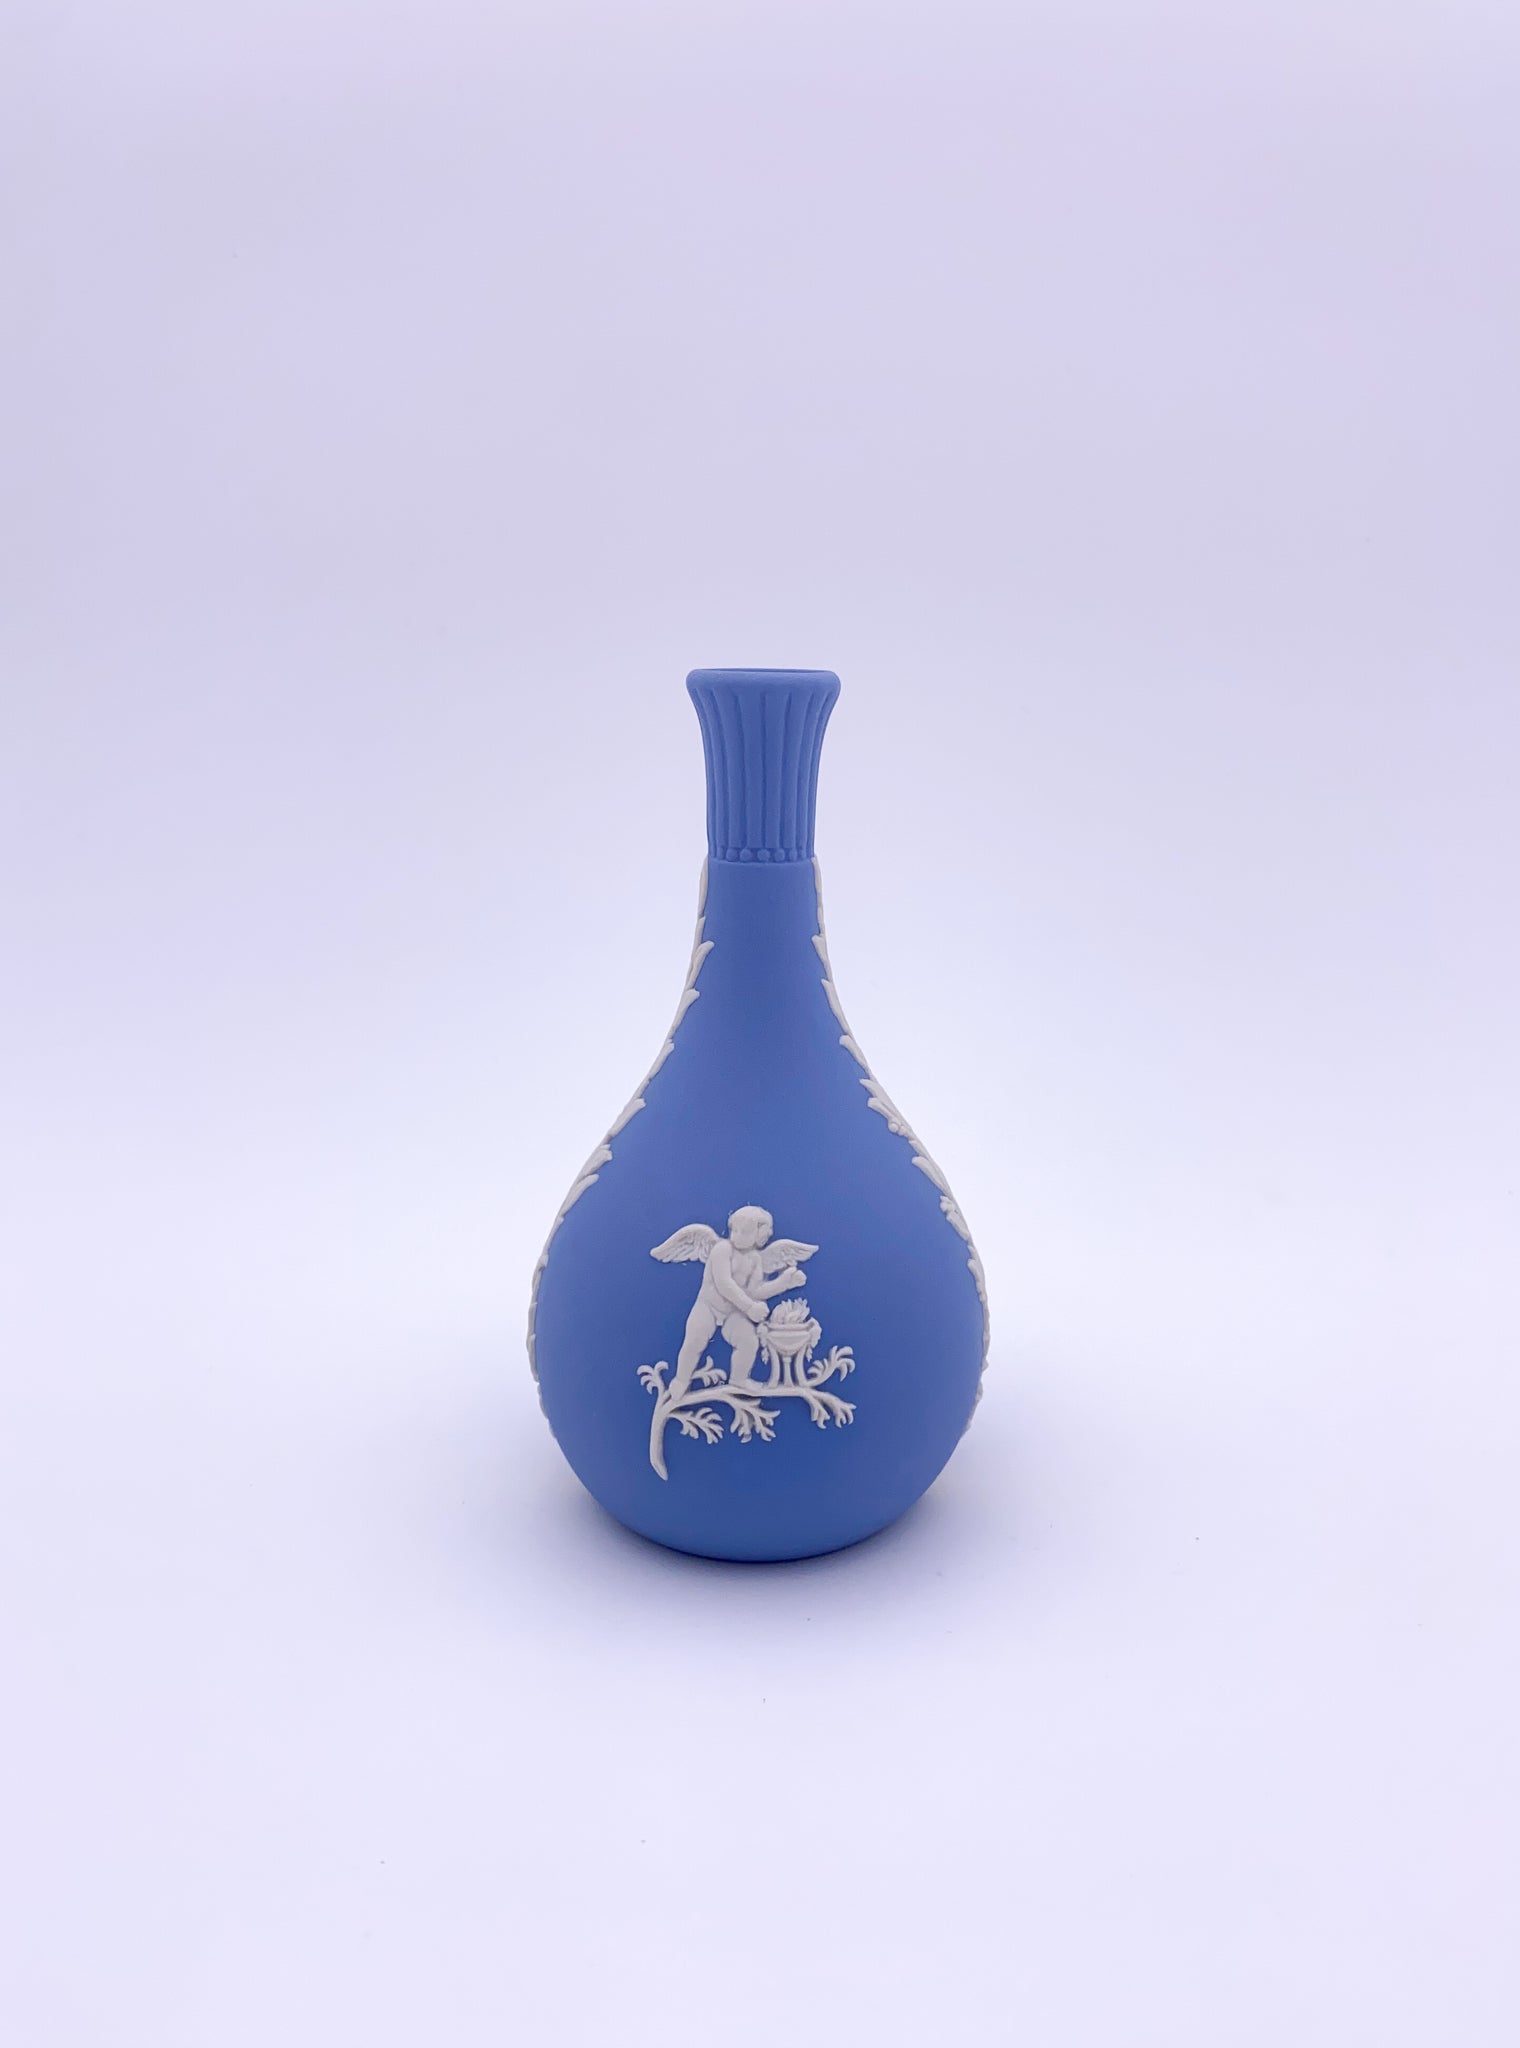 Small Wedgwood Vase